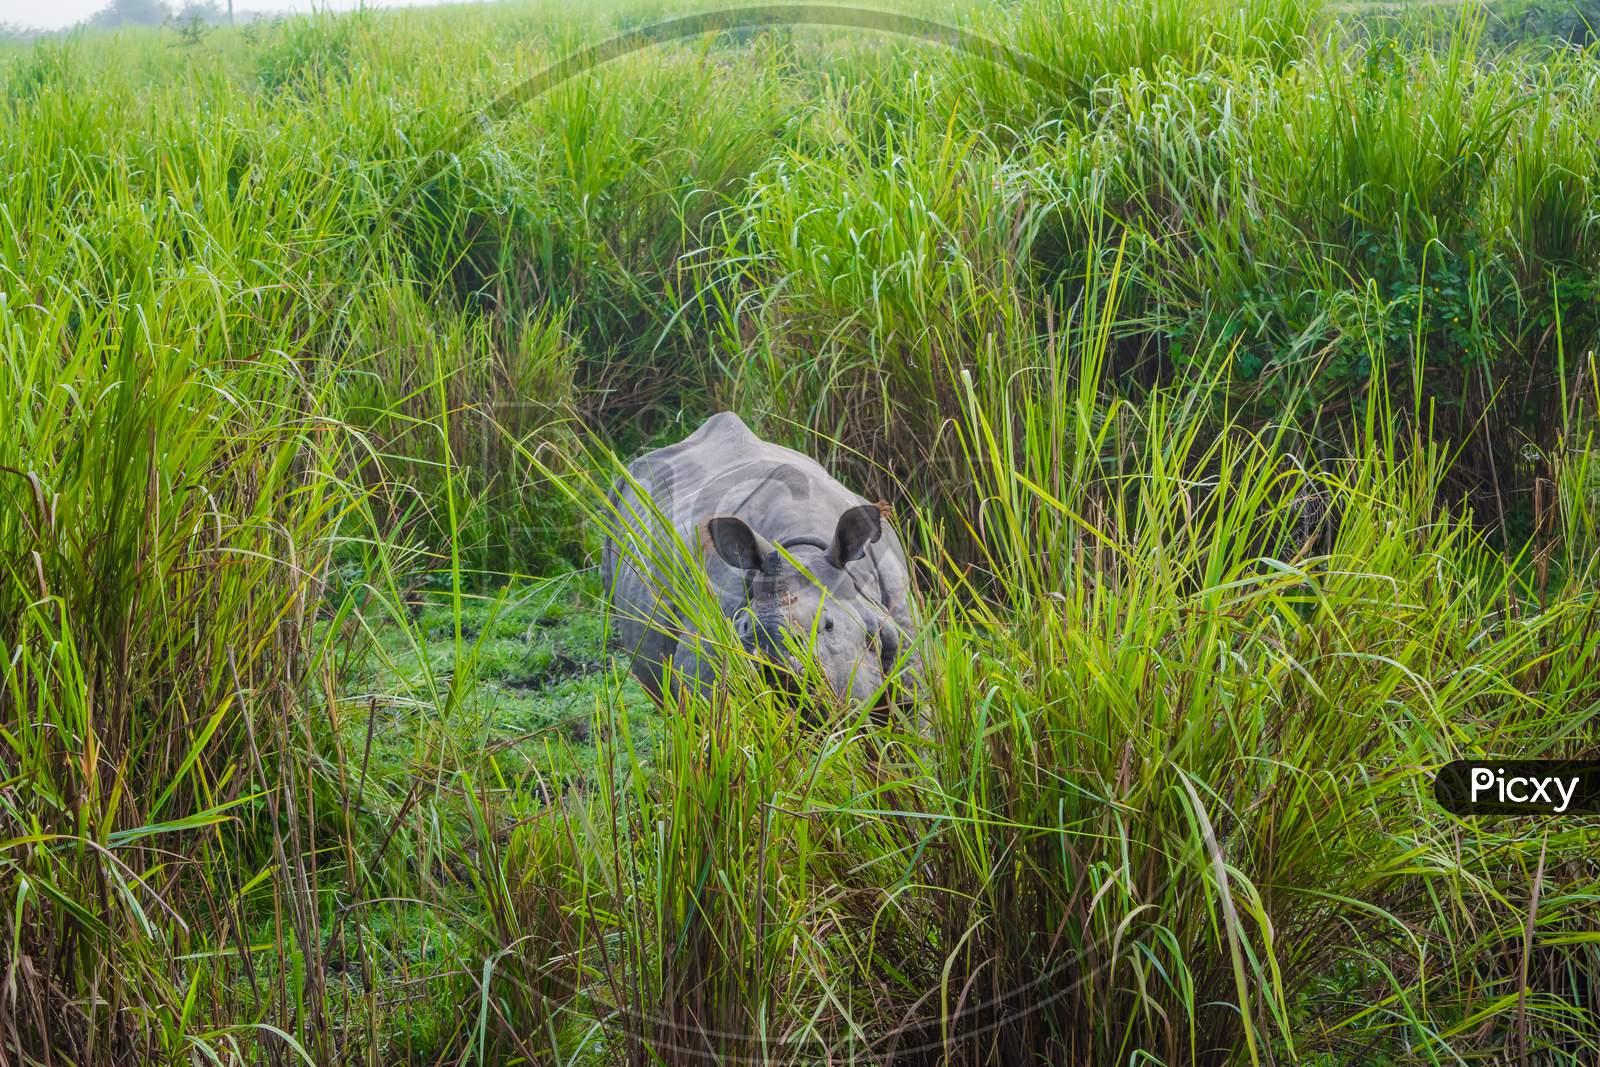 Indian one horned big rhinoceros in Kaziranga National Park - Assam, India